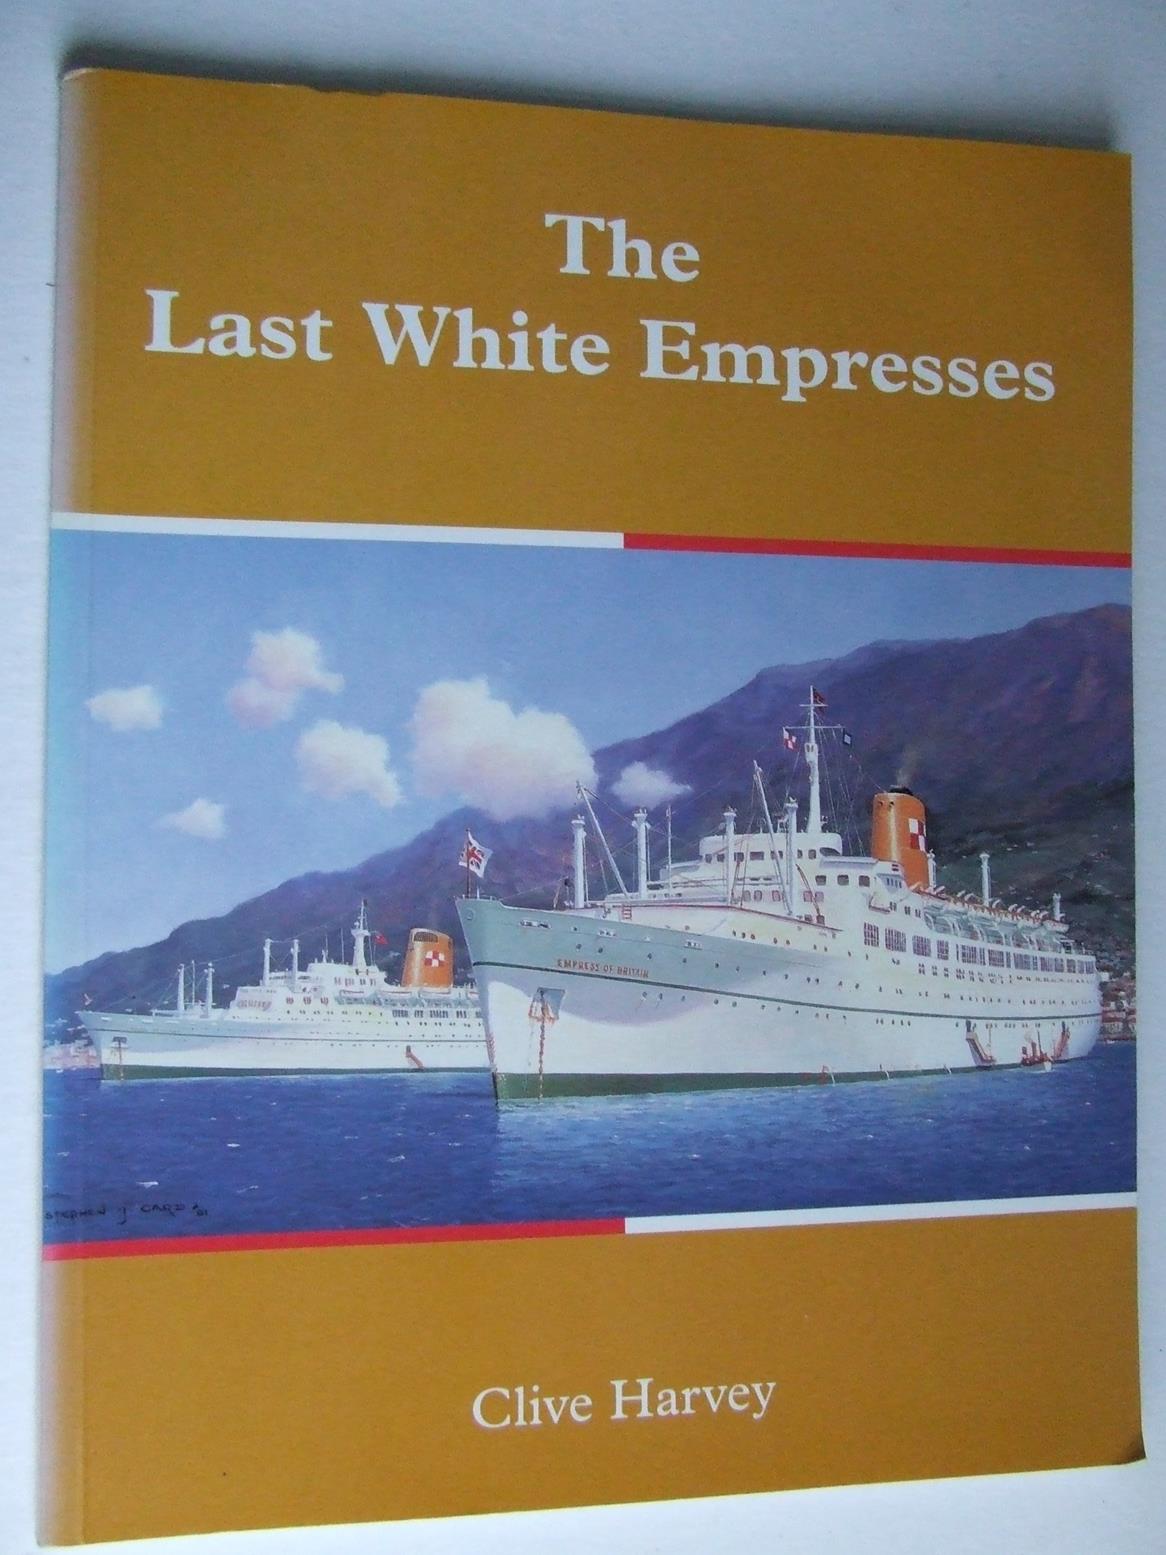 The Last White Empresses